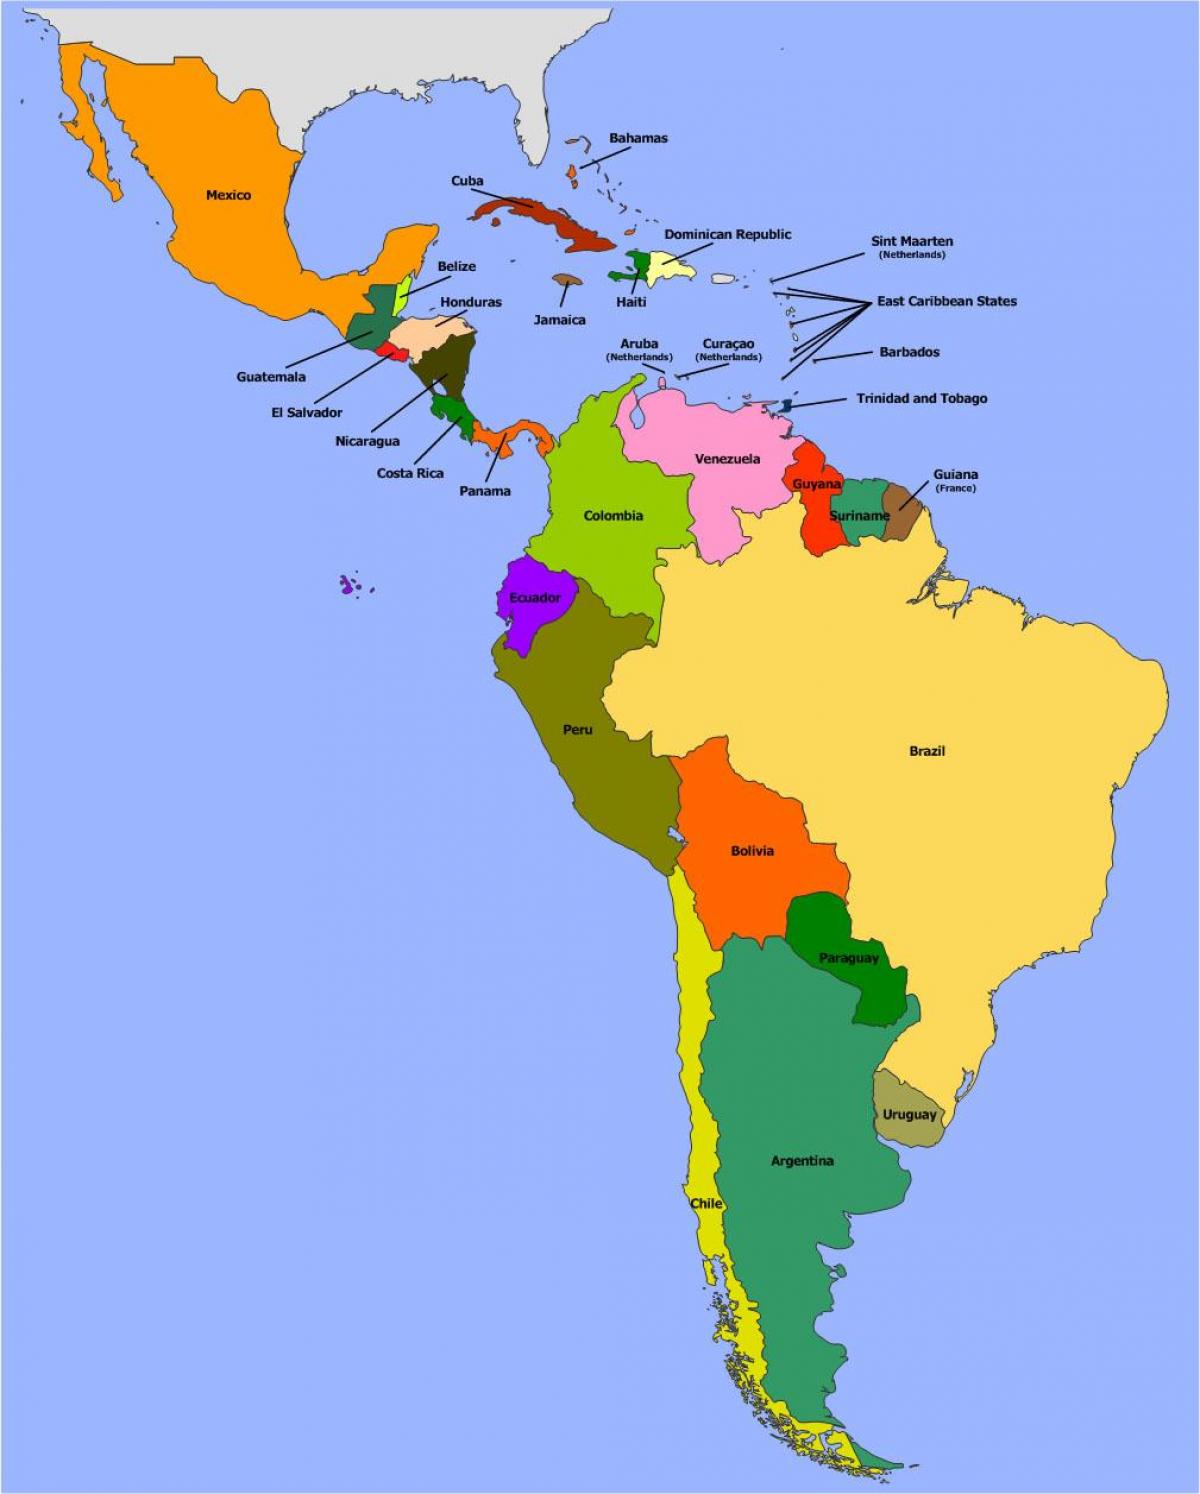 South american country. Политическая карта Латинской Америки со странами. Латинская Америка политическая карта на русском. Карта Южной и Латинской Америки. Политическая карта литанкий Америки.